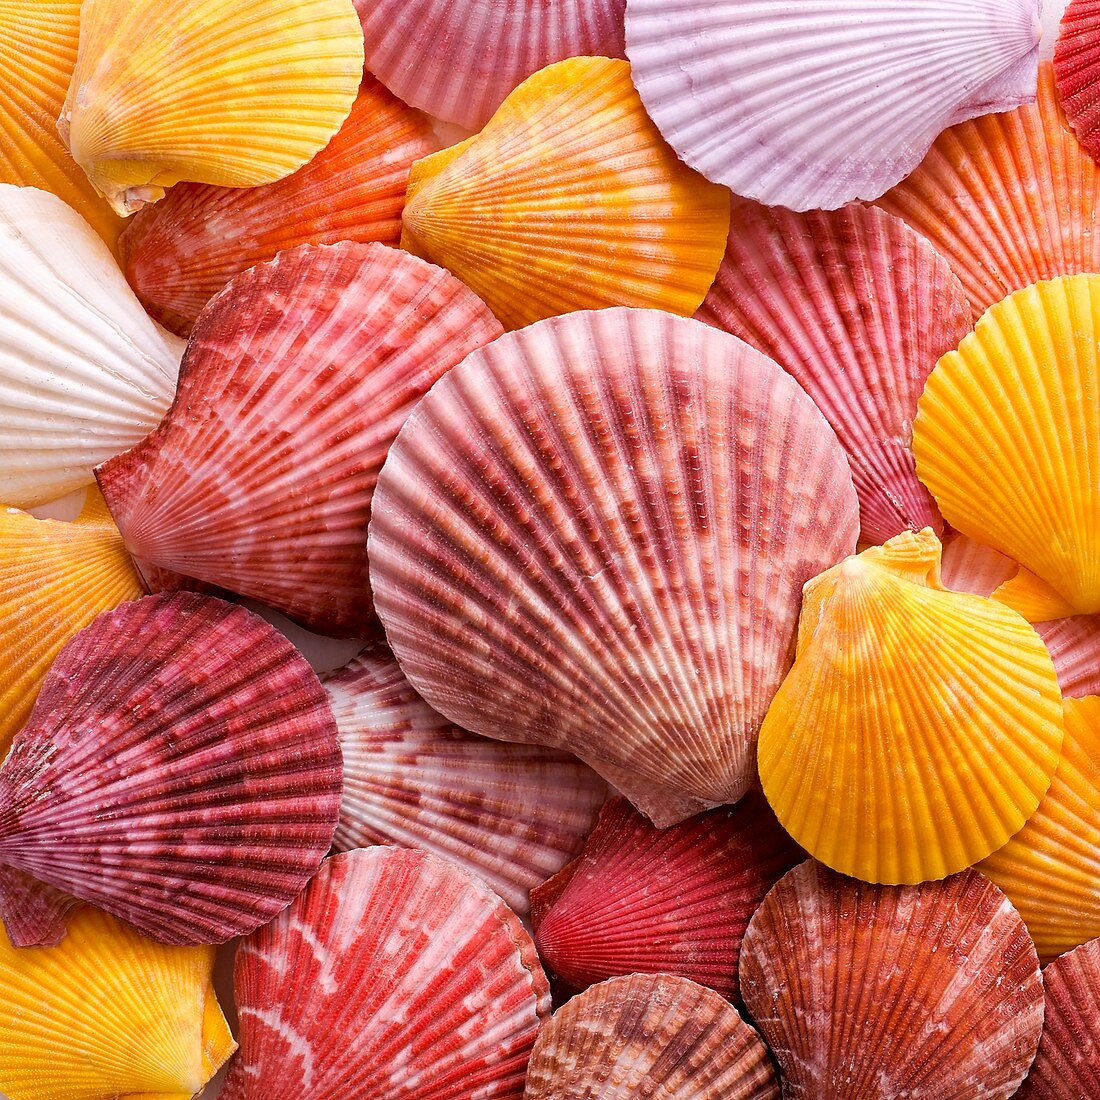 Colourful scallop shells